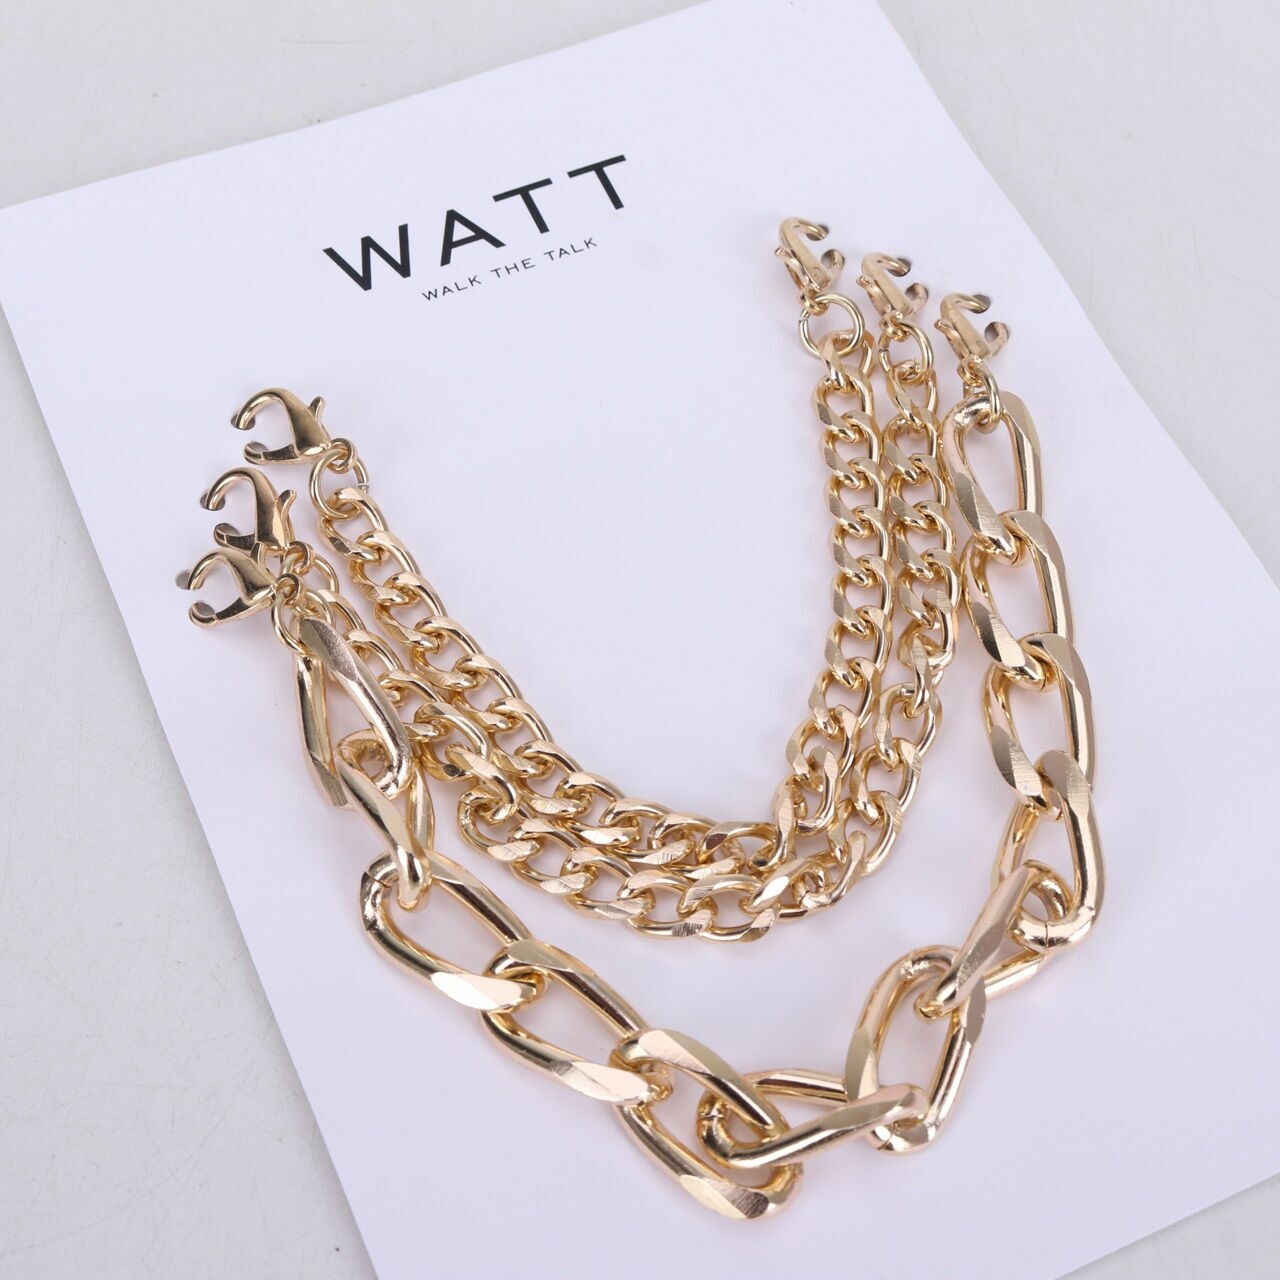 Watt-Walk The Talk Gold Chain Accessories`